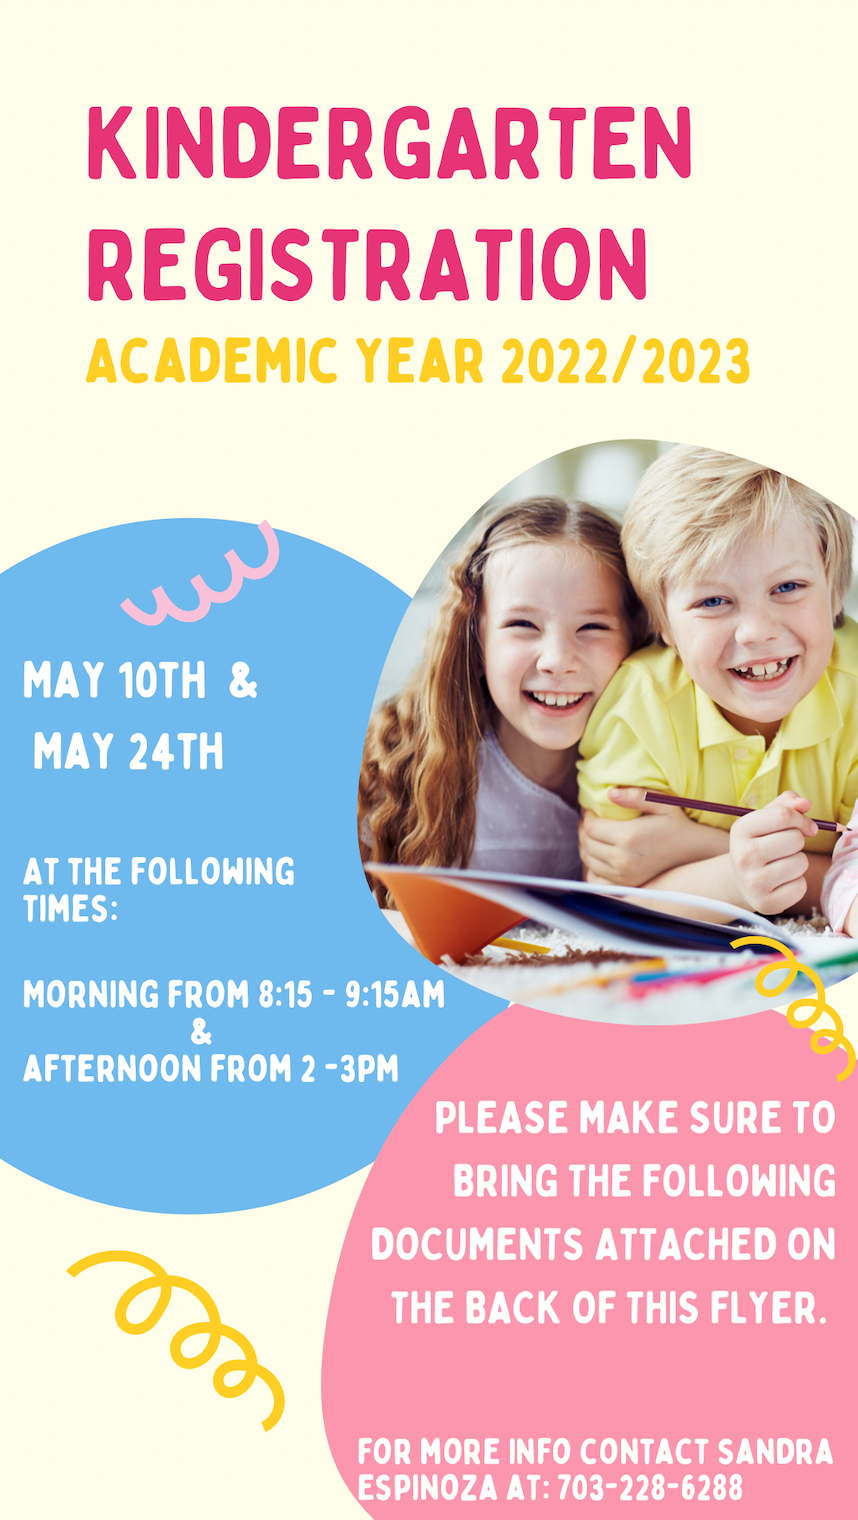 Kindergartenanmeldung für 2022/2023 am 10. Mai und 24. Mai von 8:15 - 9:15 und 2:00 - 3:00 Uhr